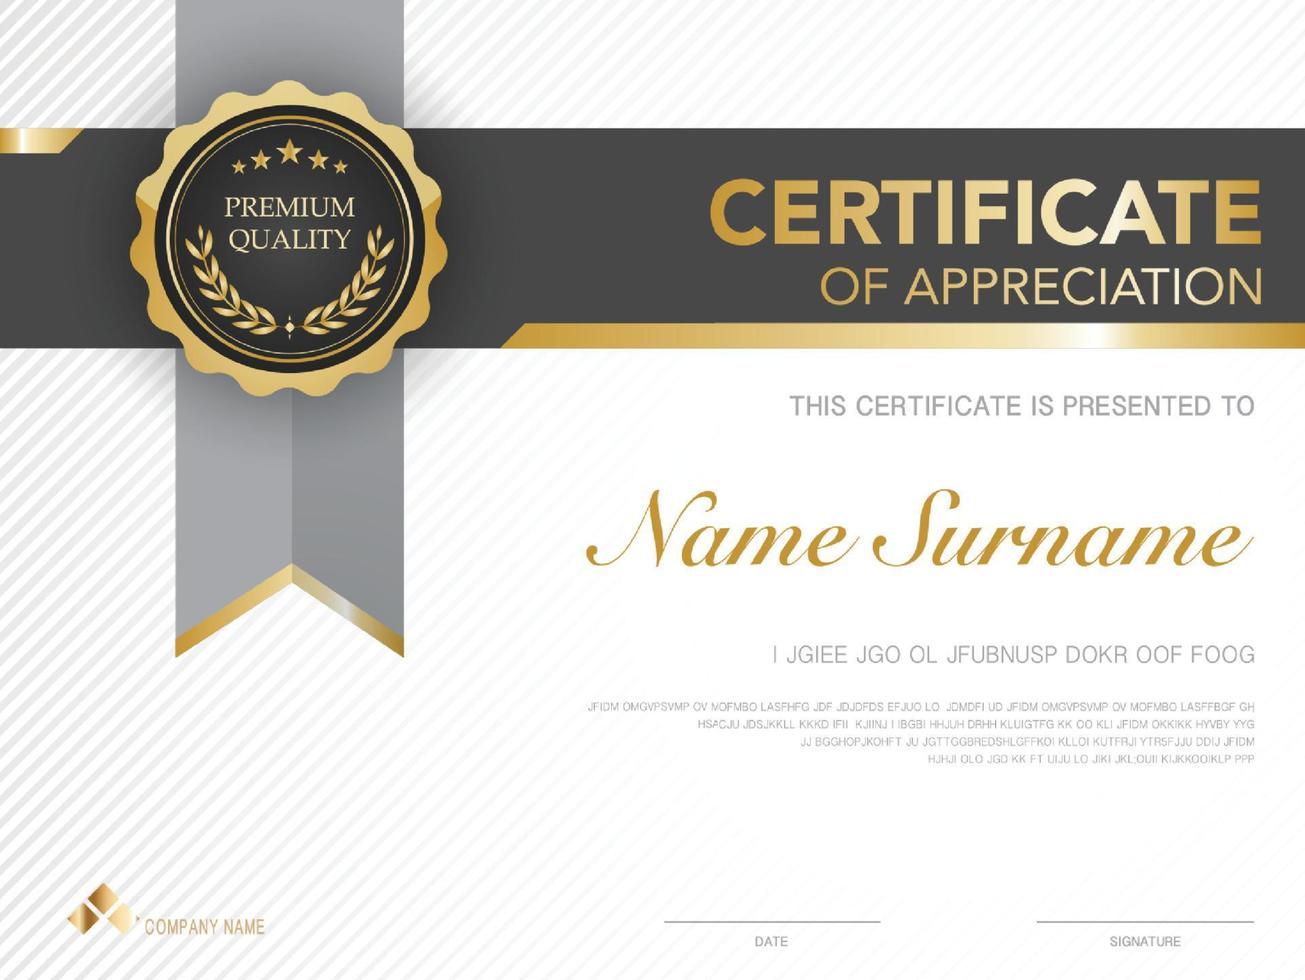 modello di certificato nero e oro con immagine di stile di lusso. diploma di disegno geometrico moderno. vettore eps10